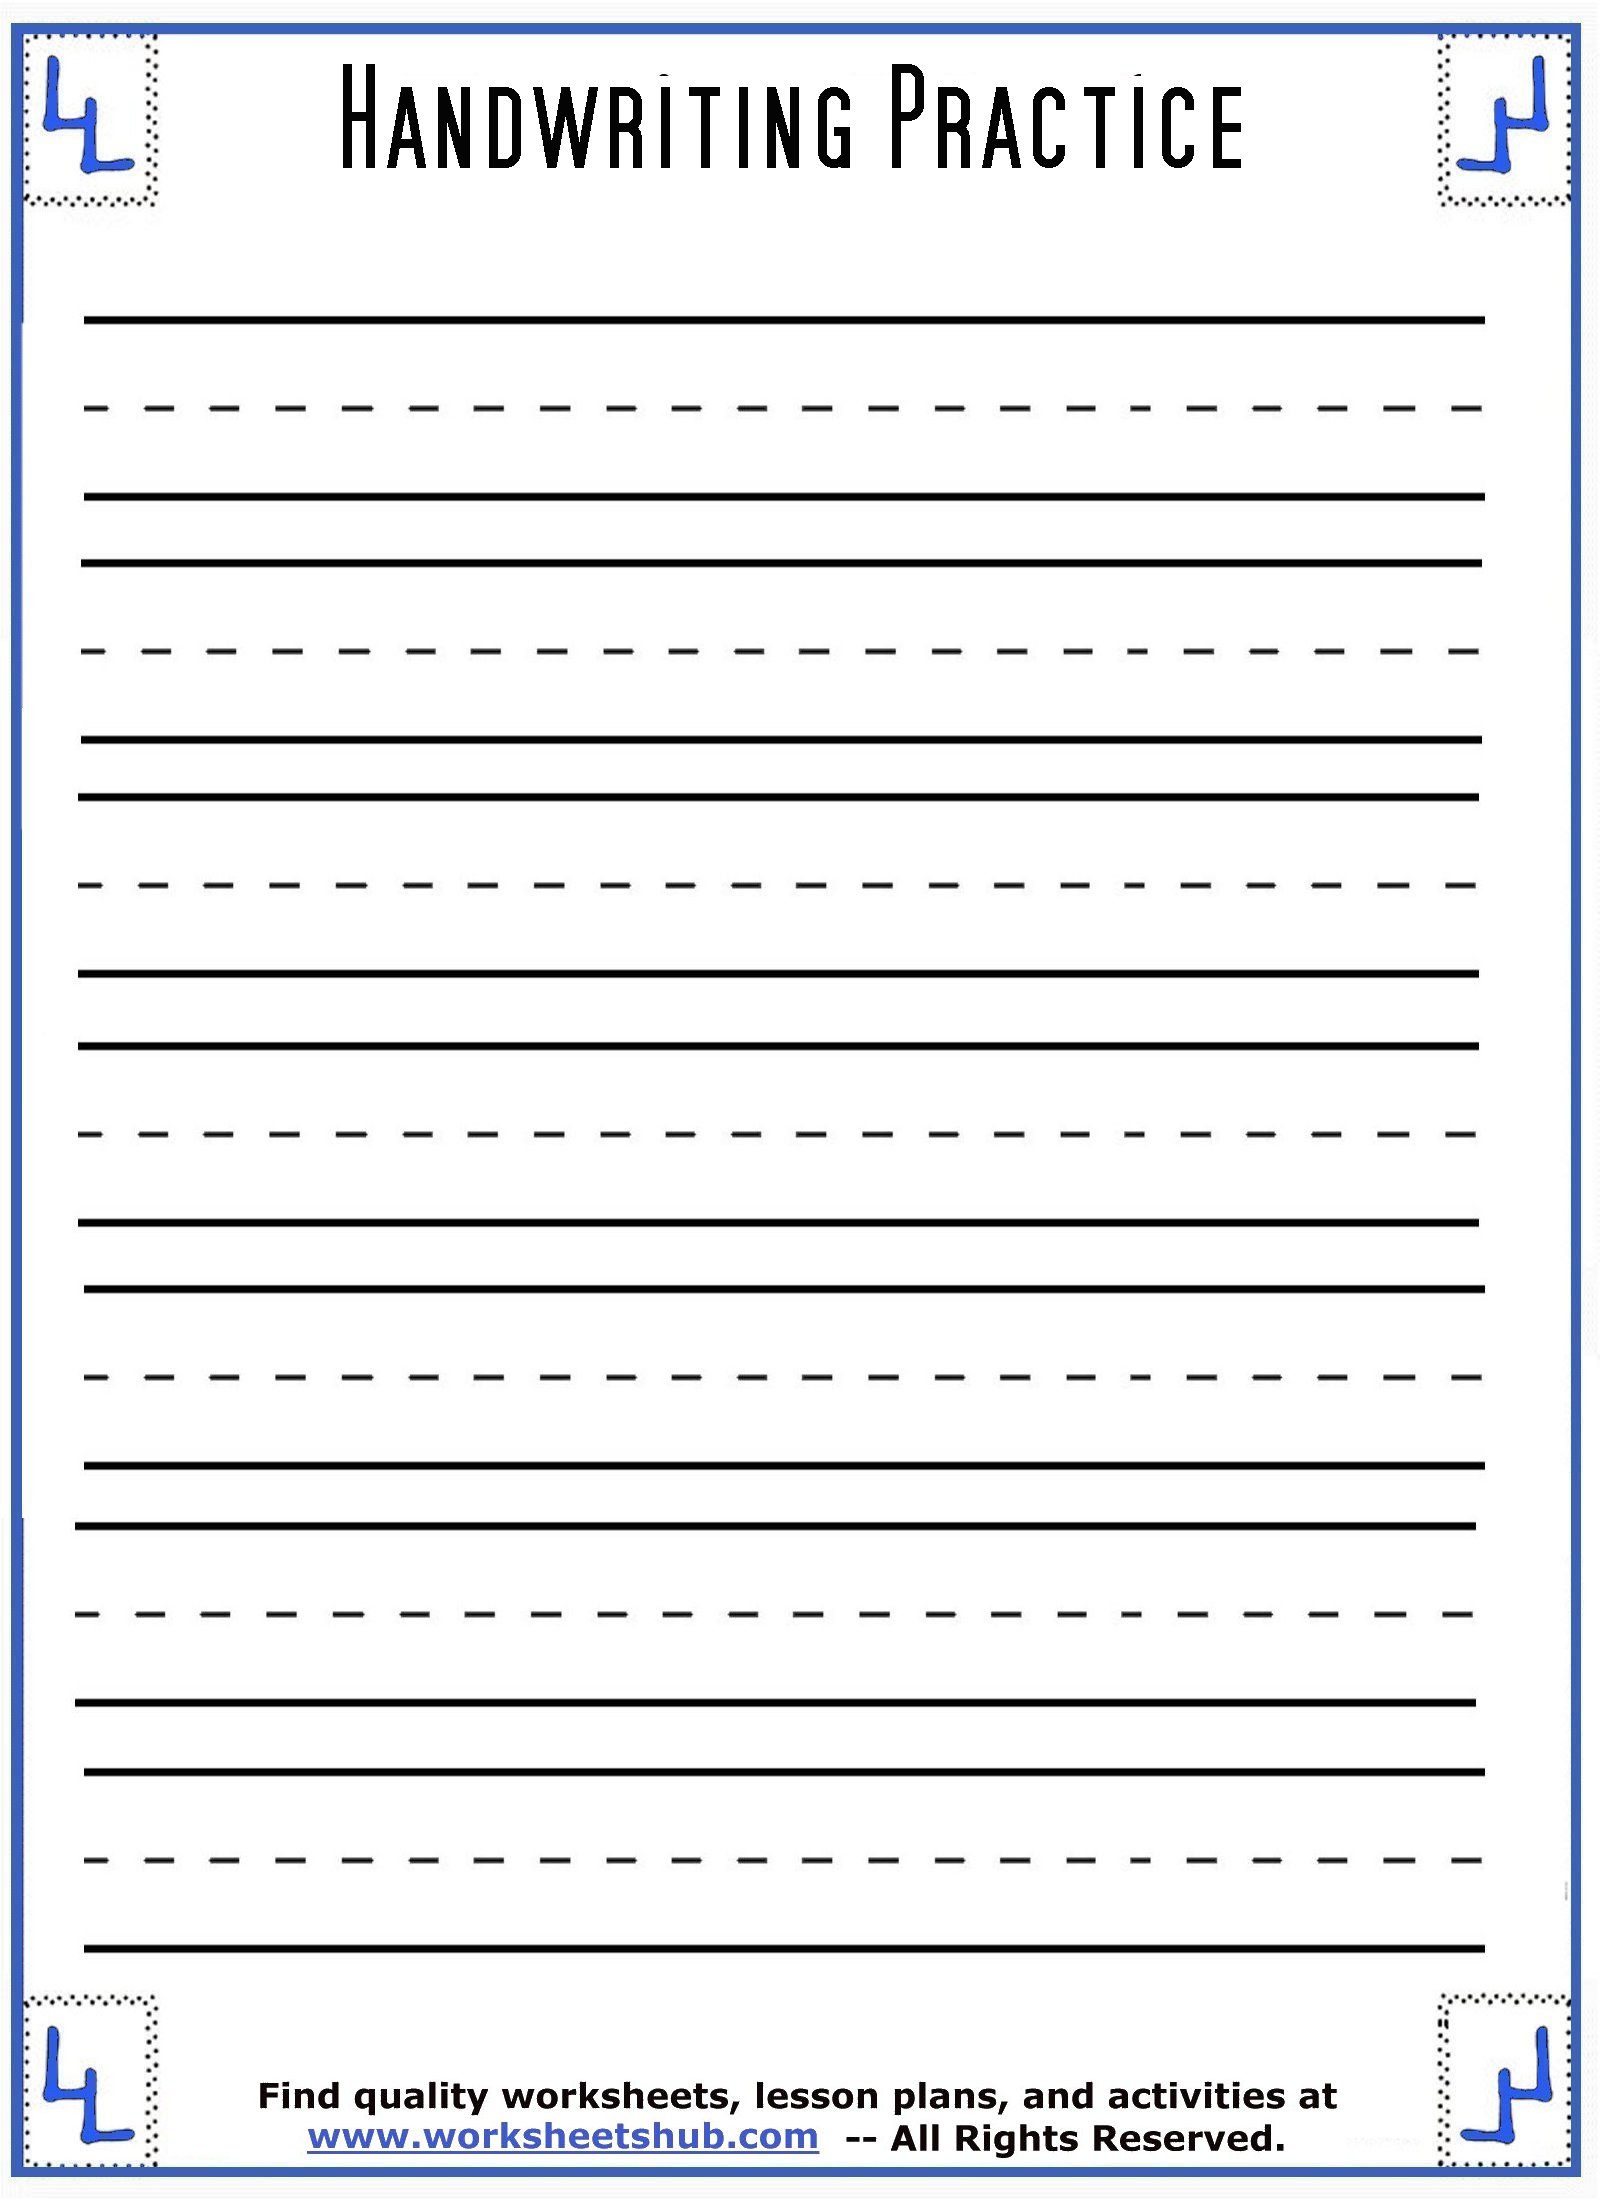 handwriting-blank-sheets